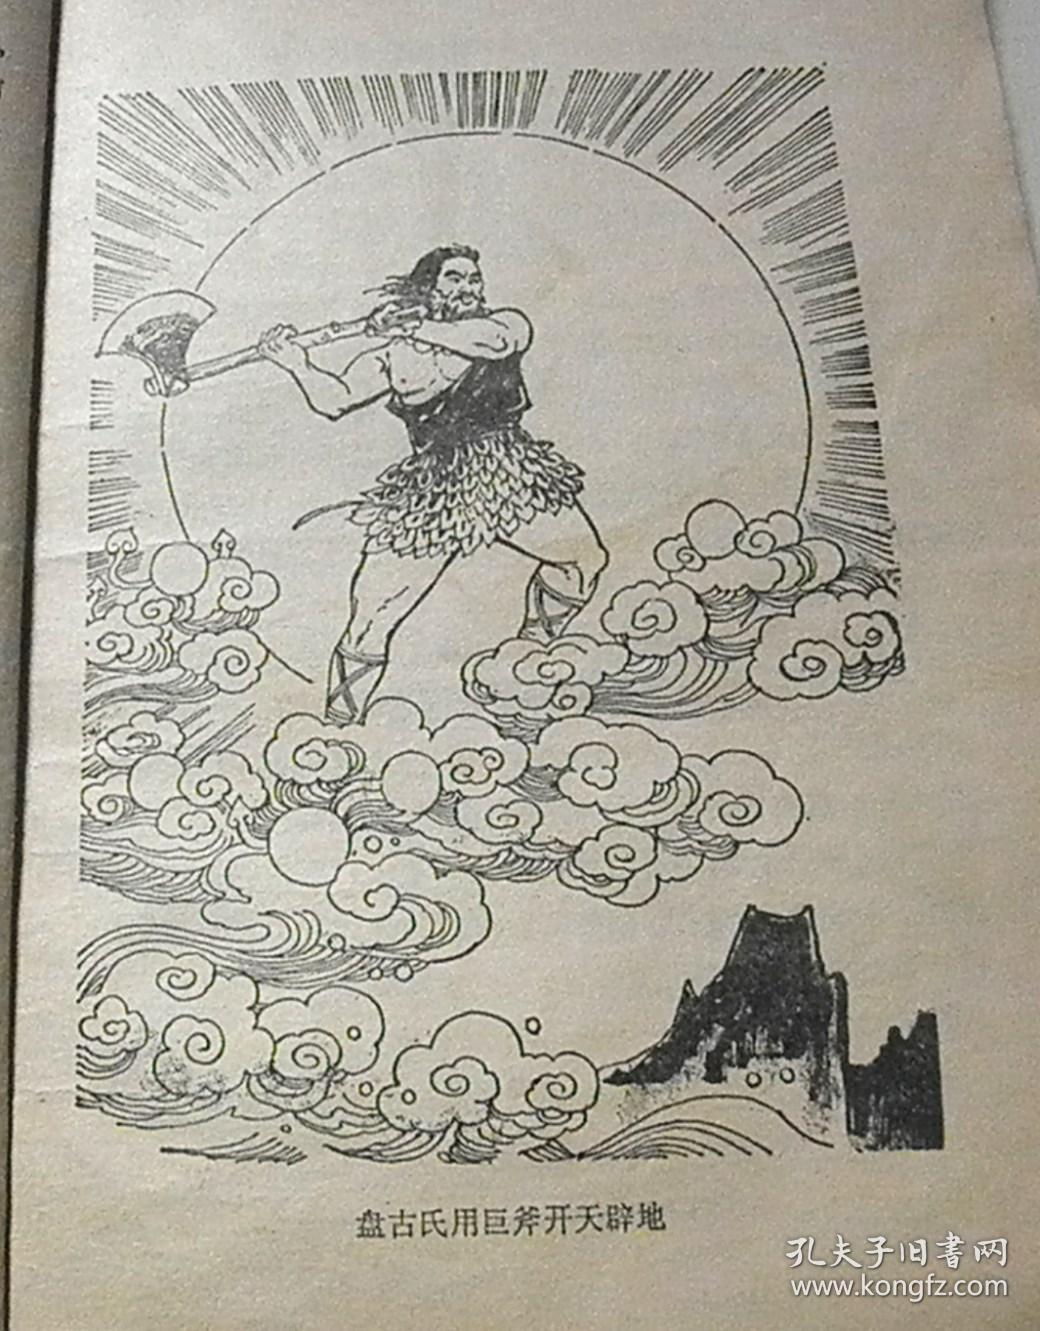 中国历史故事(上古-西周)【绘画:邓泰和,著名连环画家